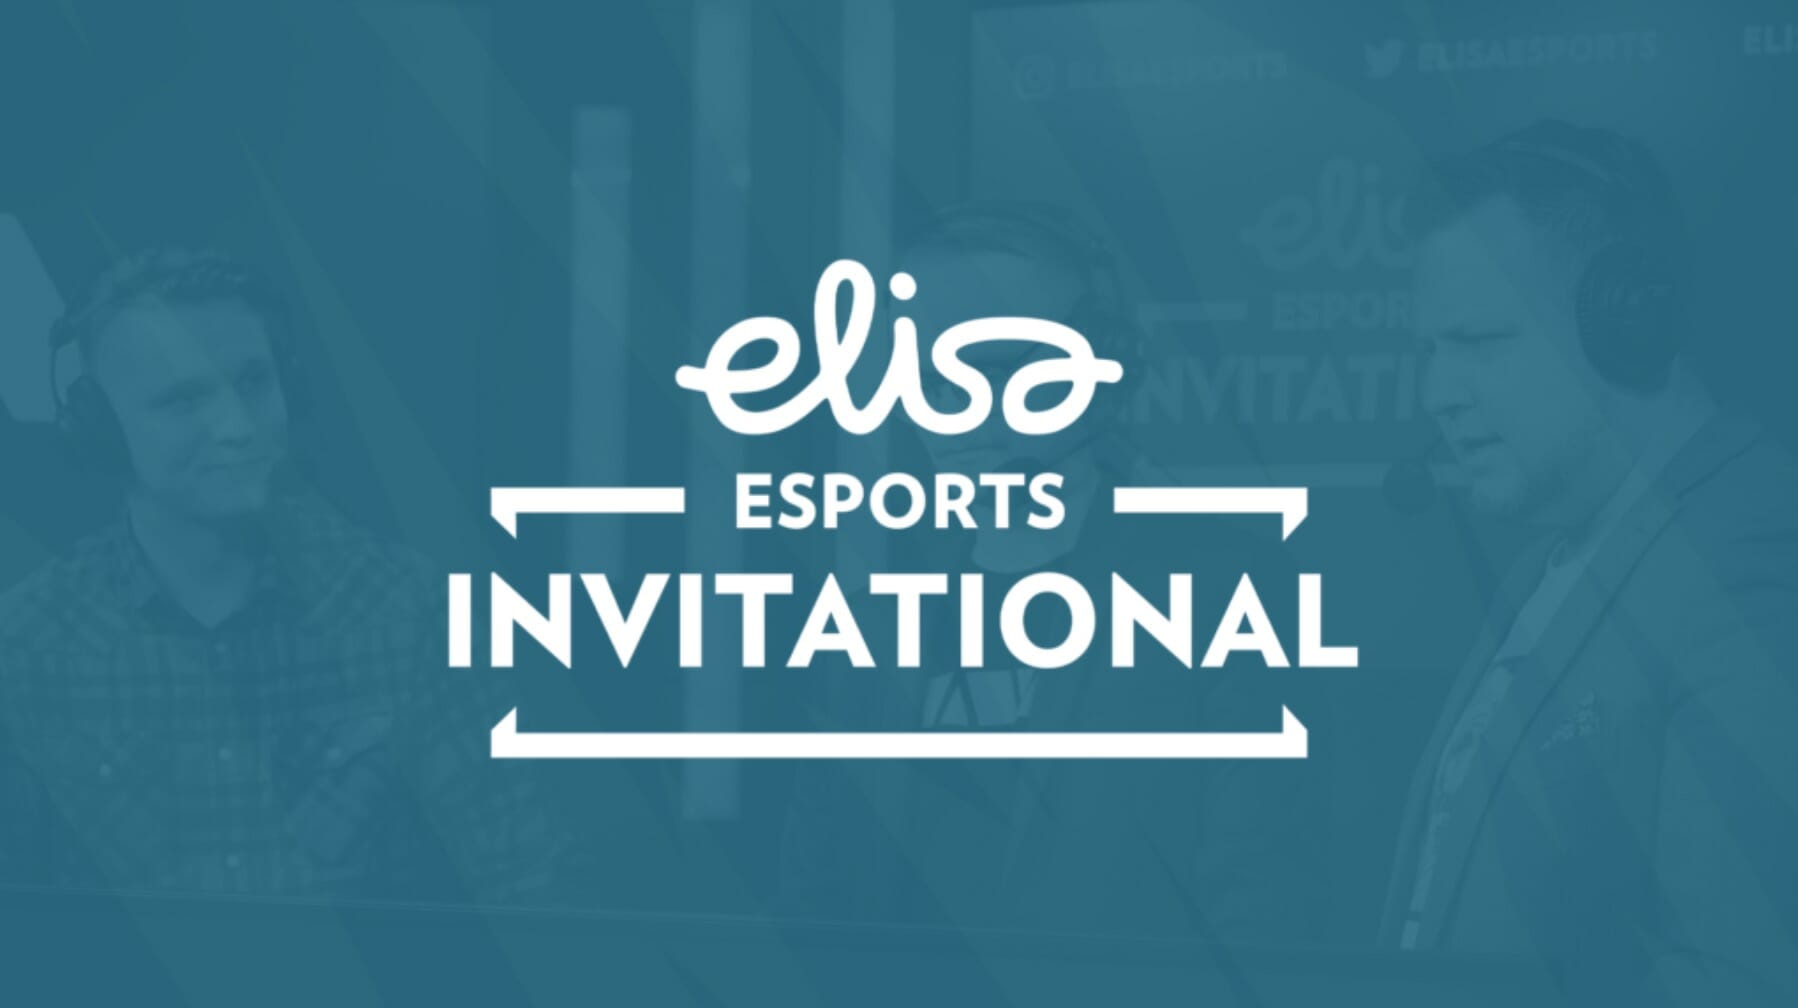 Elisa esports Invitational